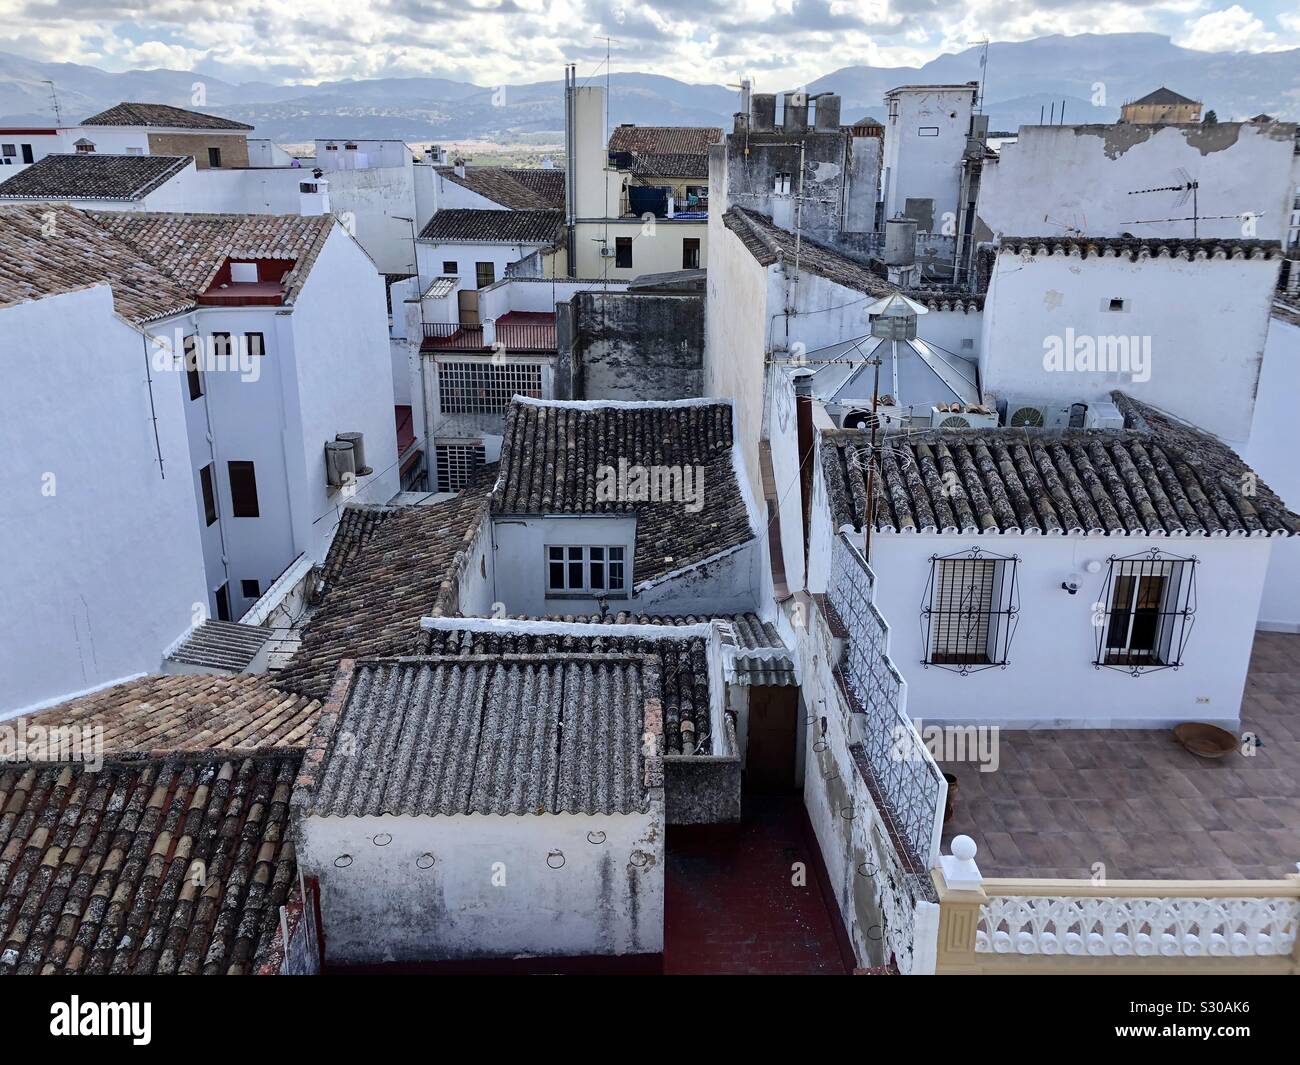 Toits de bâtiments blancs à Ronda en Espagne Banque D'Images